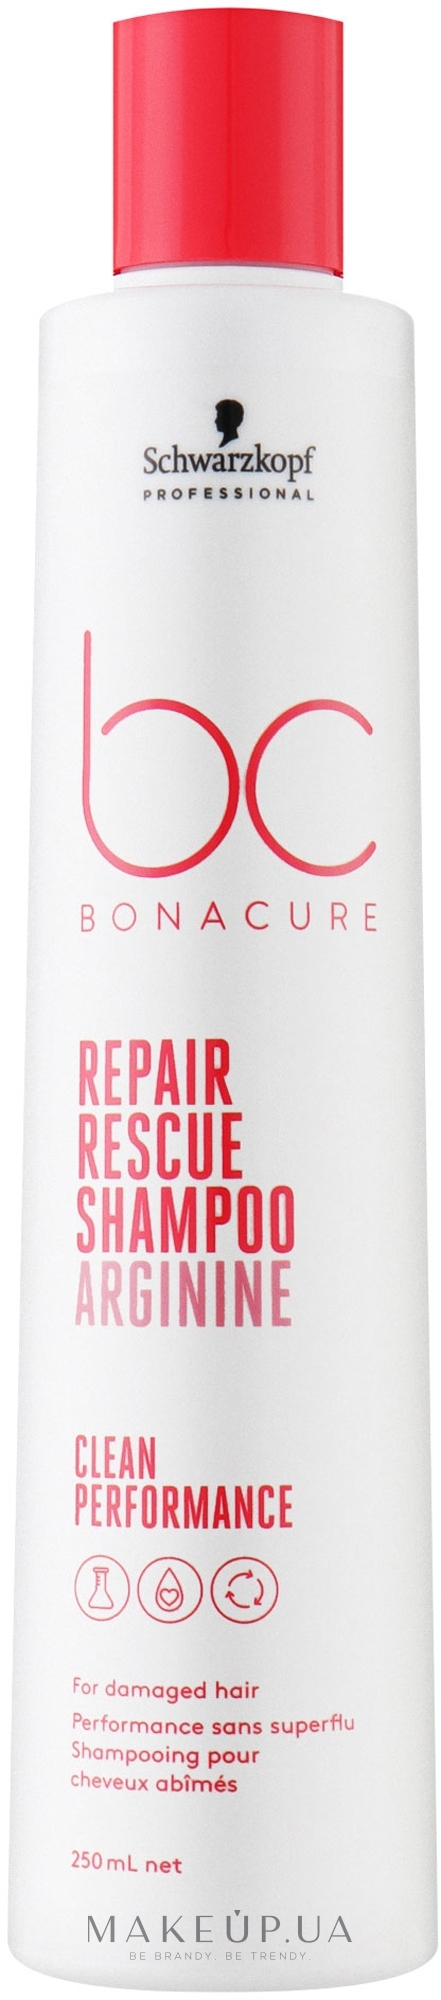 Шампунь для поврежденных волос - Schwarzkopf Professional Bonacure Repair Rescue Shampoo Arginine Clean Performance — фото 250ml